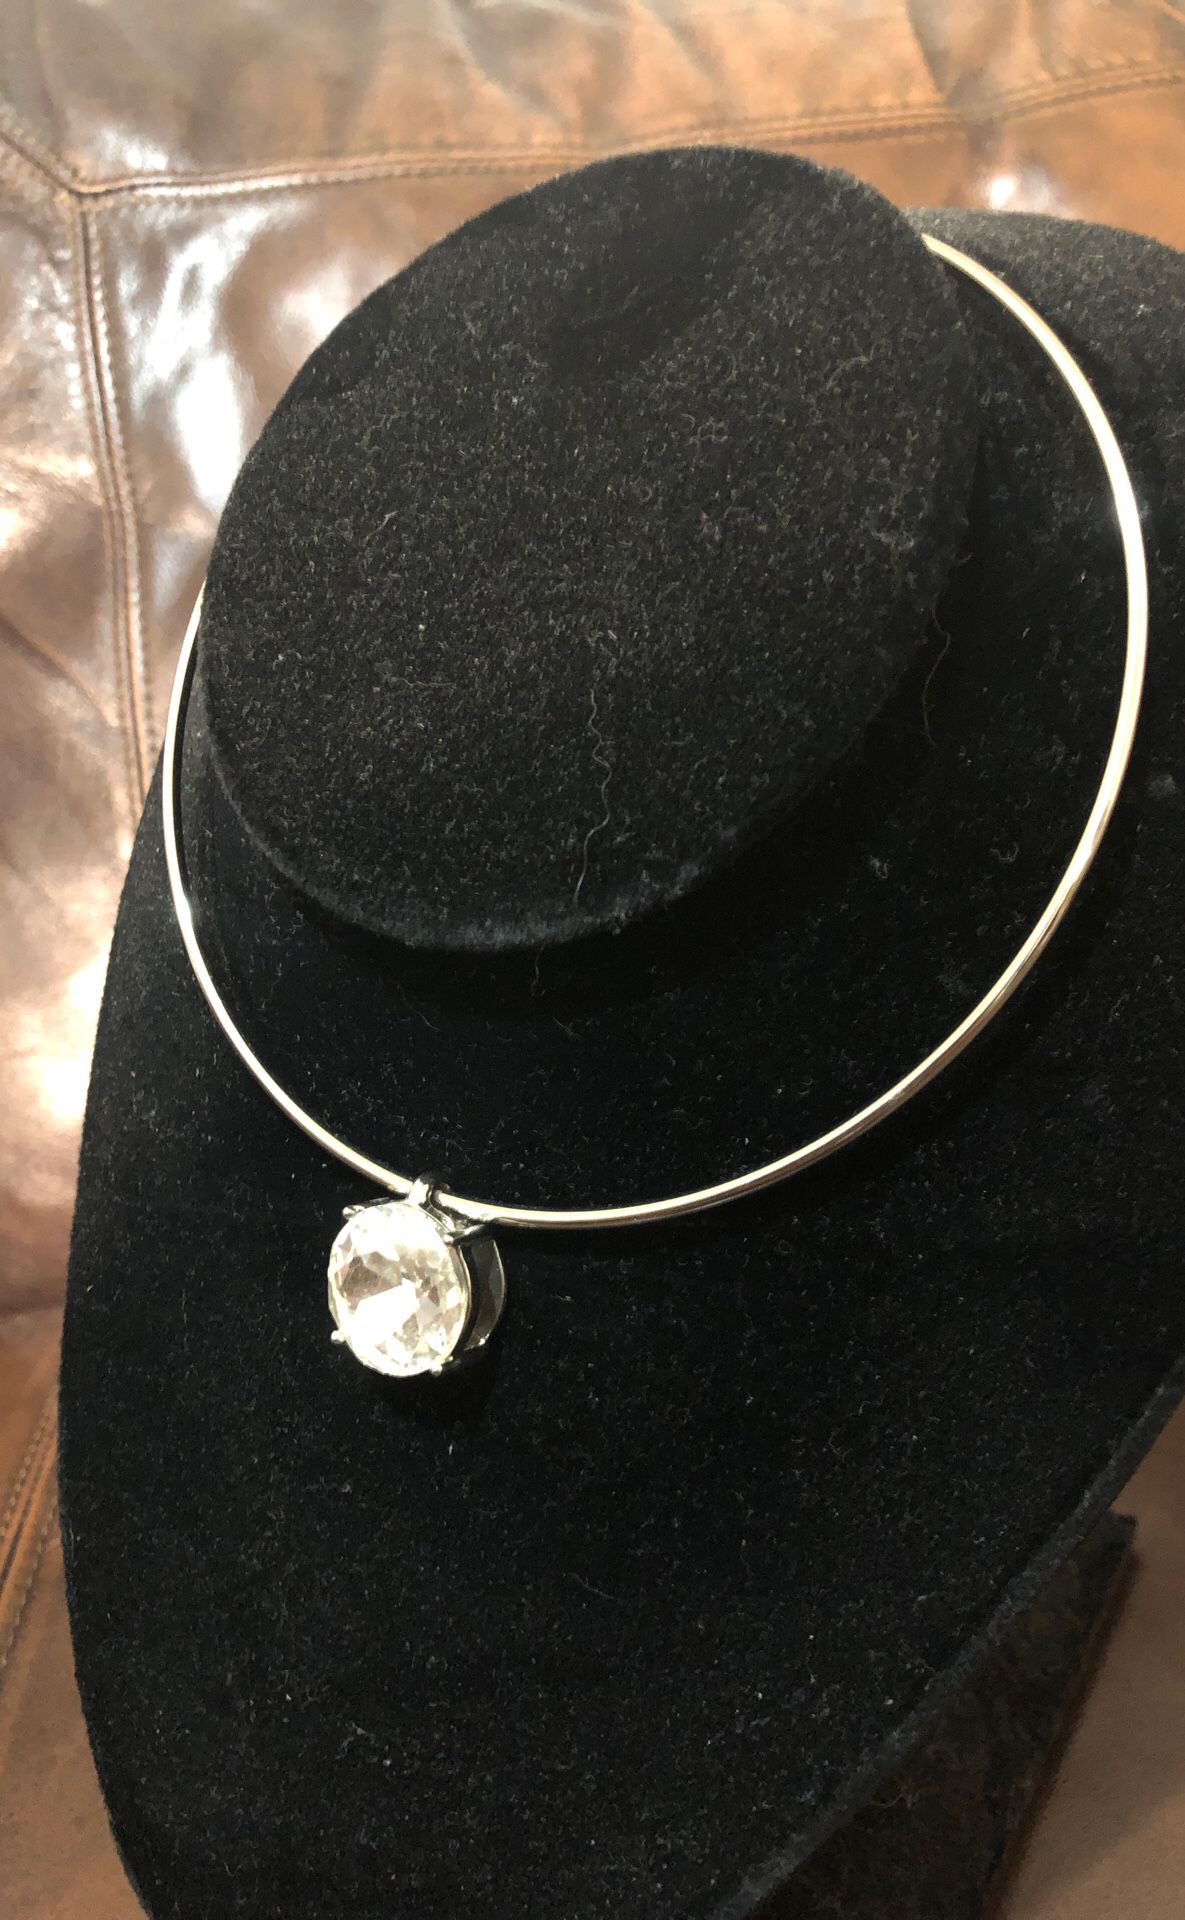 Prom / wedding / club / party diamond jewel necklace. Very pretty choker.